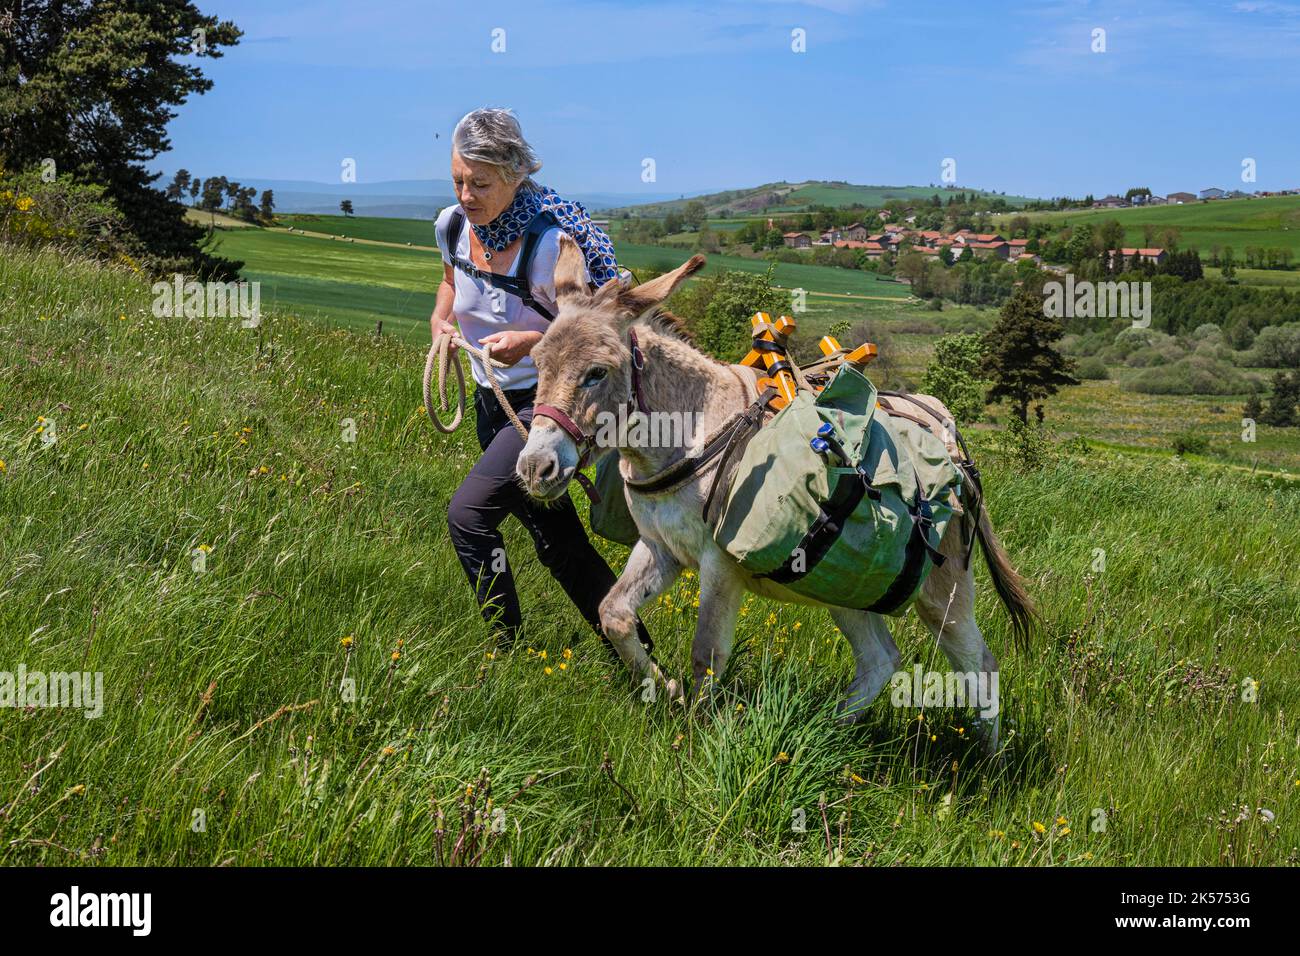 France, haute-Loire (43), Landos, champ de blé encore vert tourmenté par des rafales de vent Banque D'Images